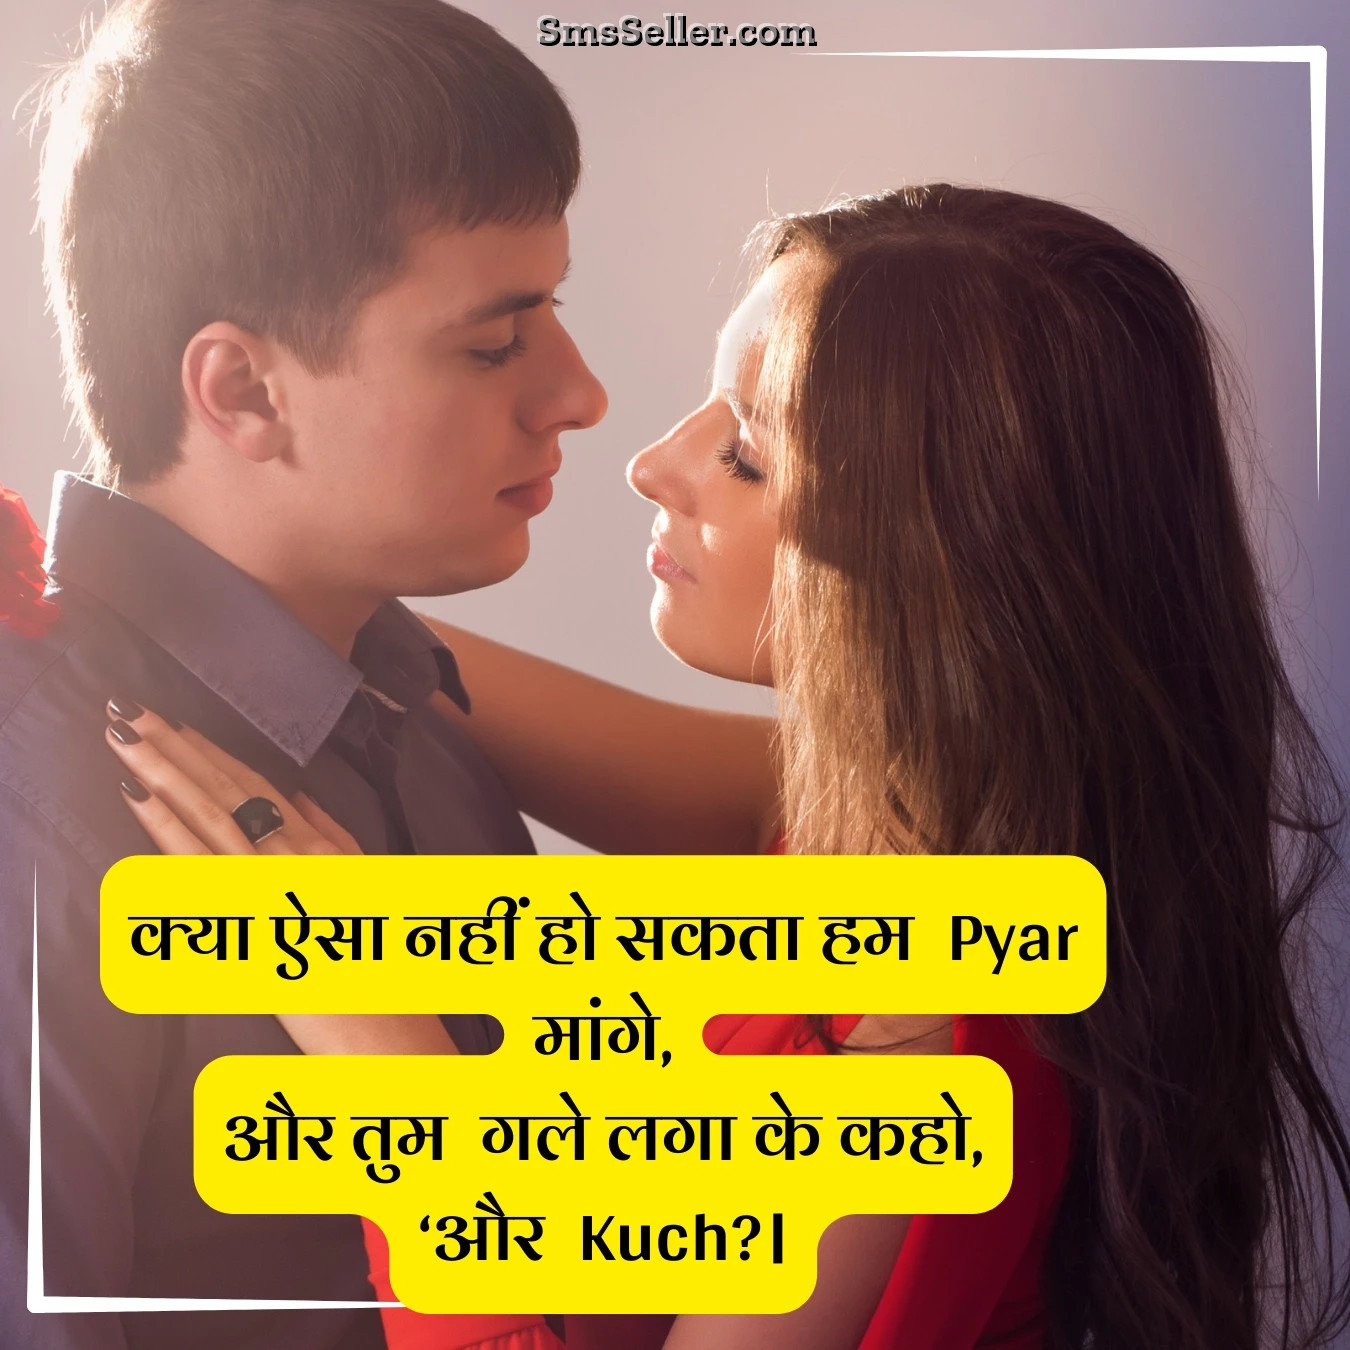 life partner relationship quotes kya aisa nahin ho sakata